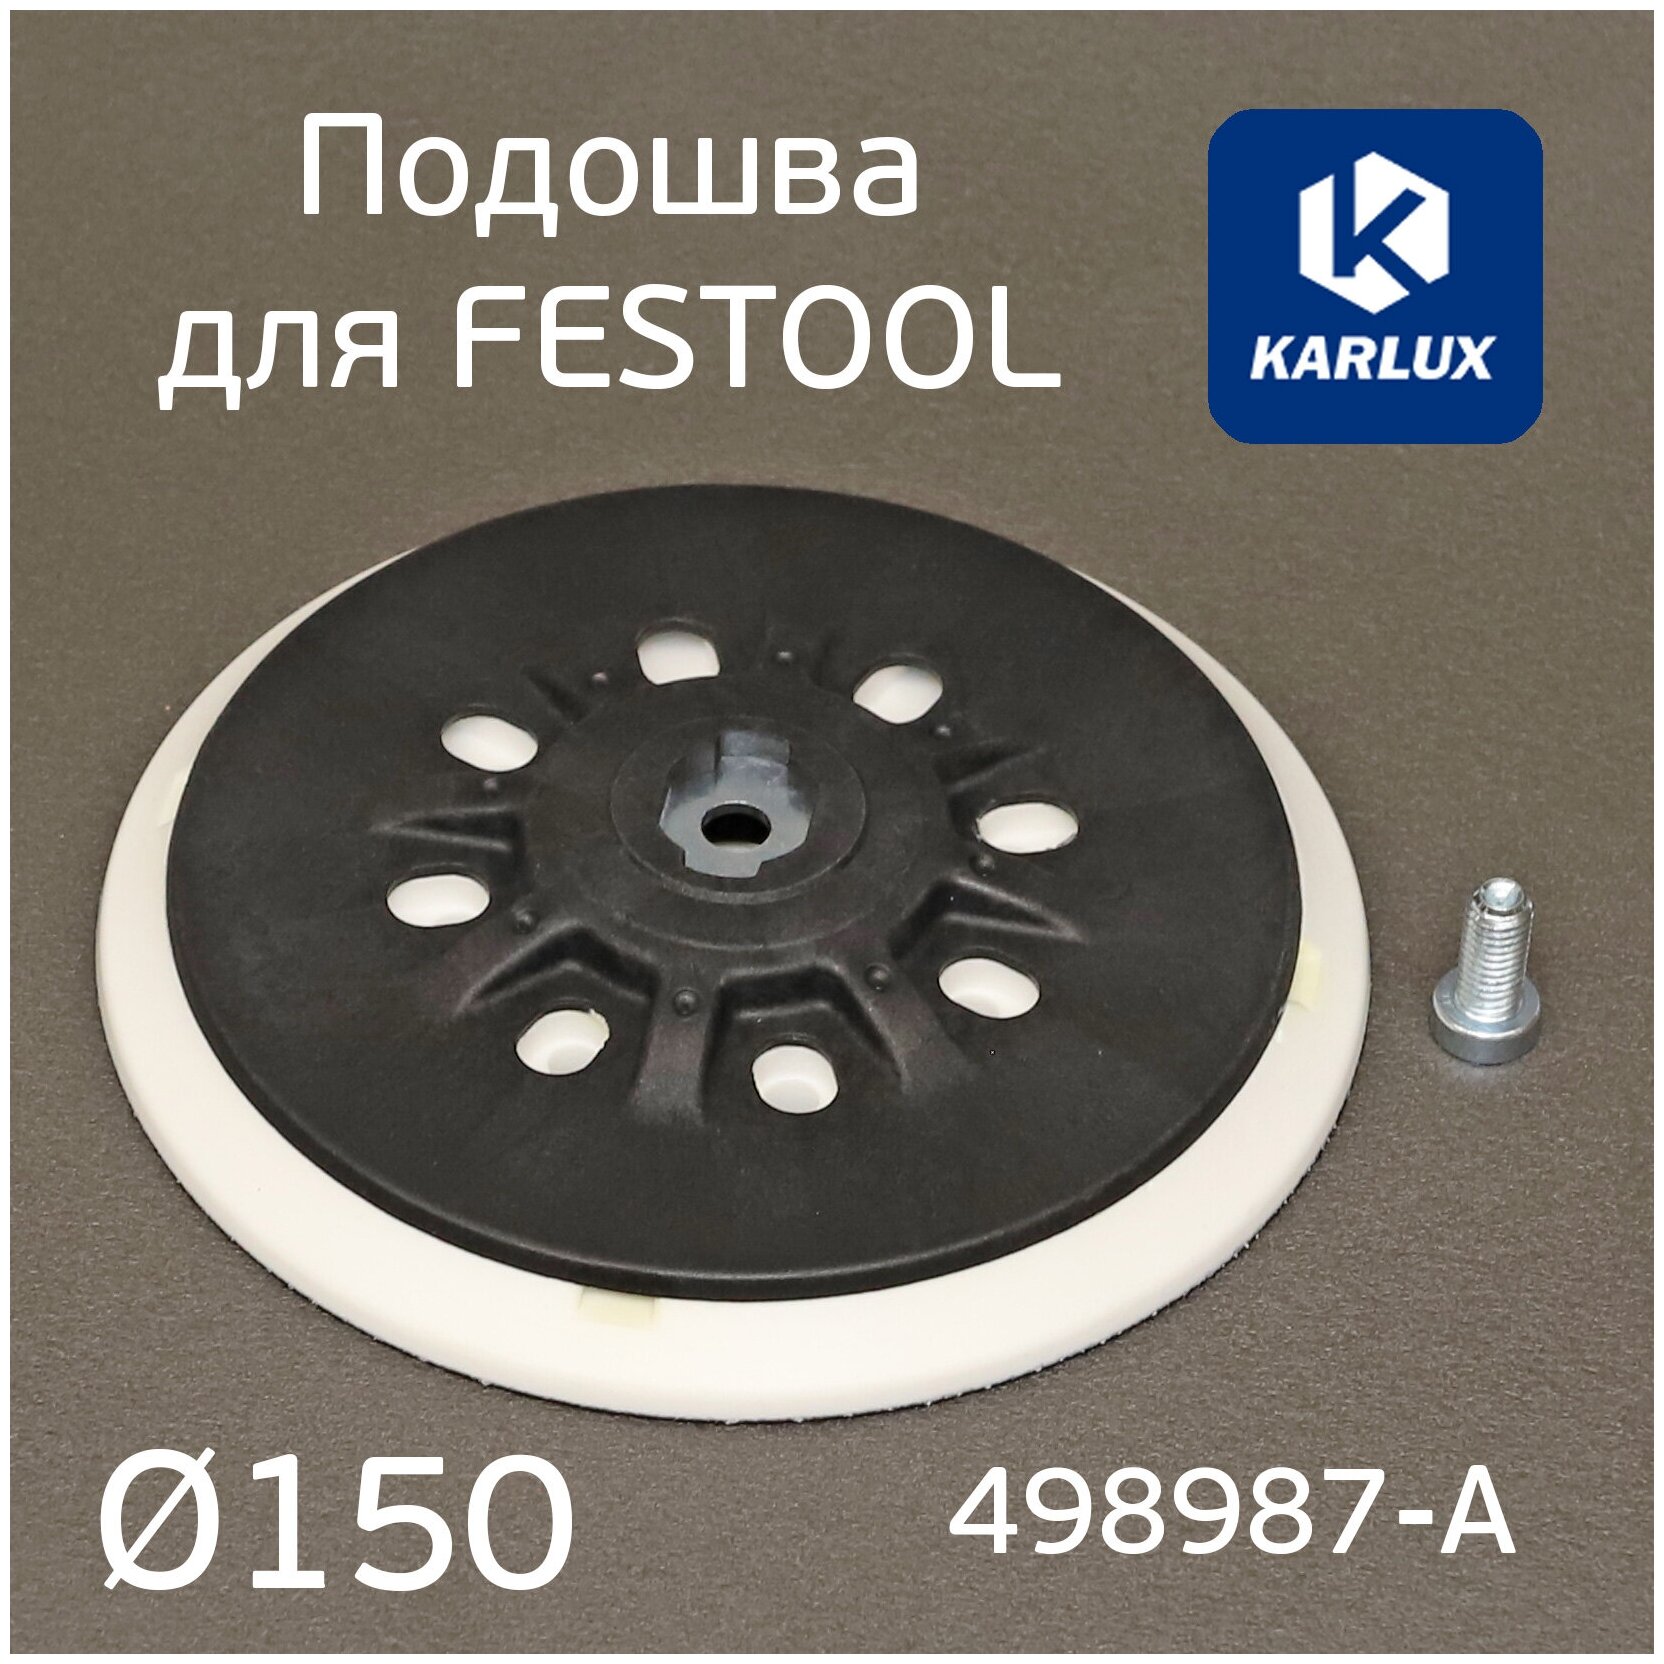 Подошва Karlux для Festool 150мм средней жесткости винт М8 для шлифмашинок